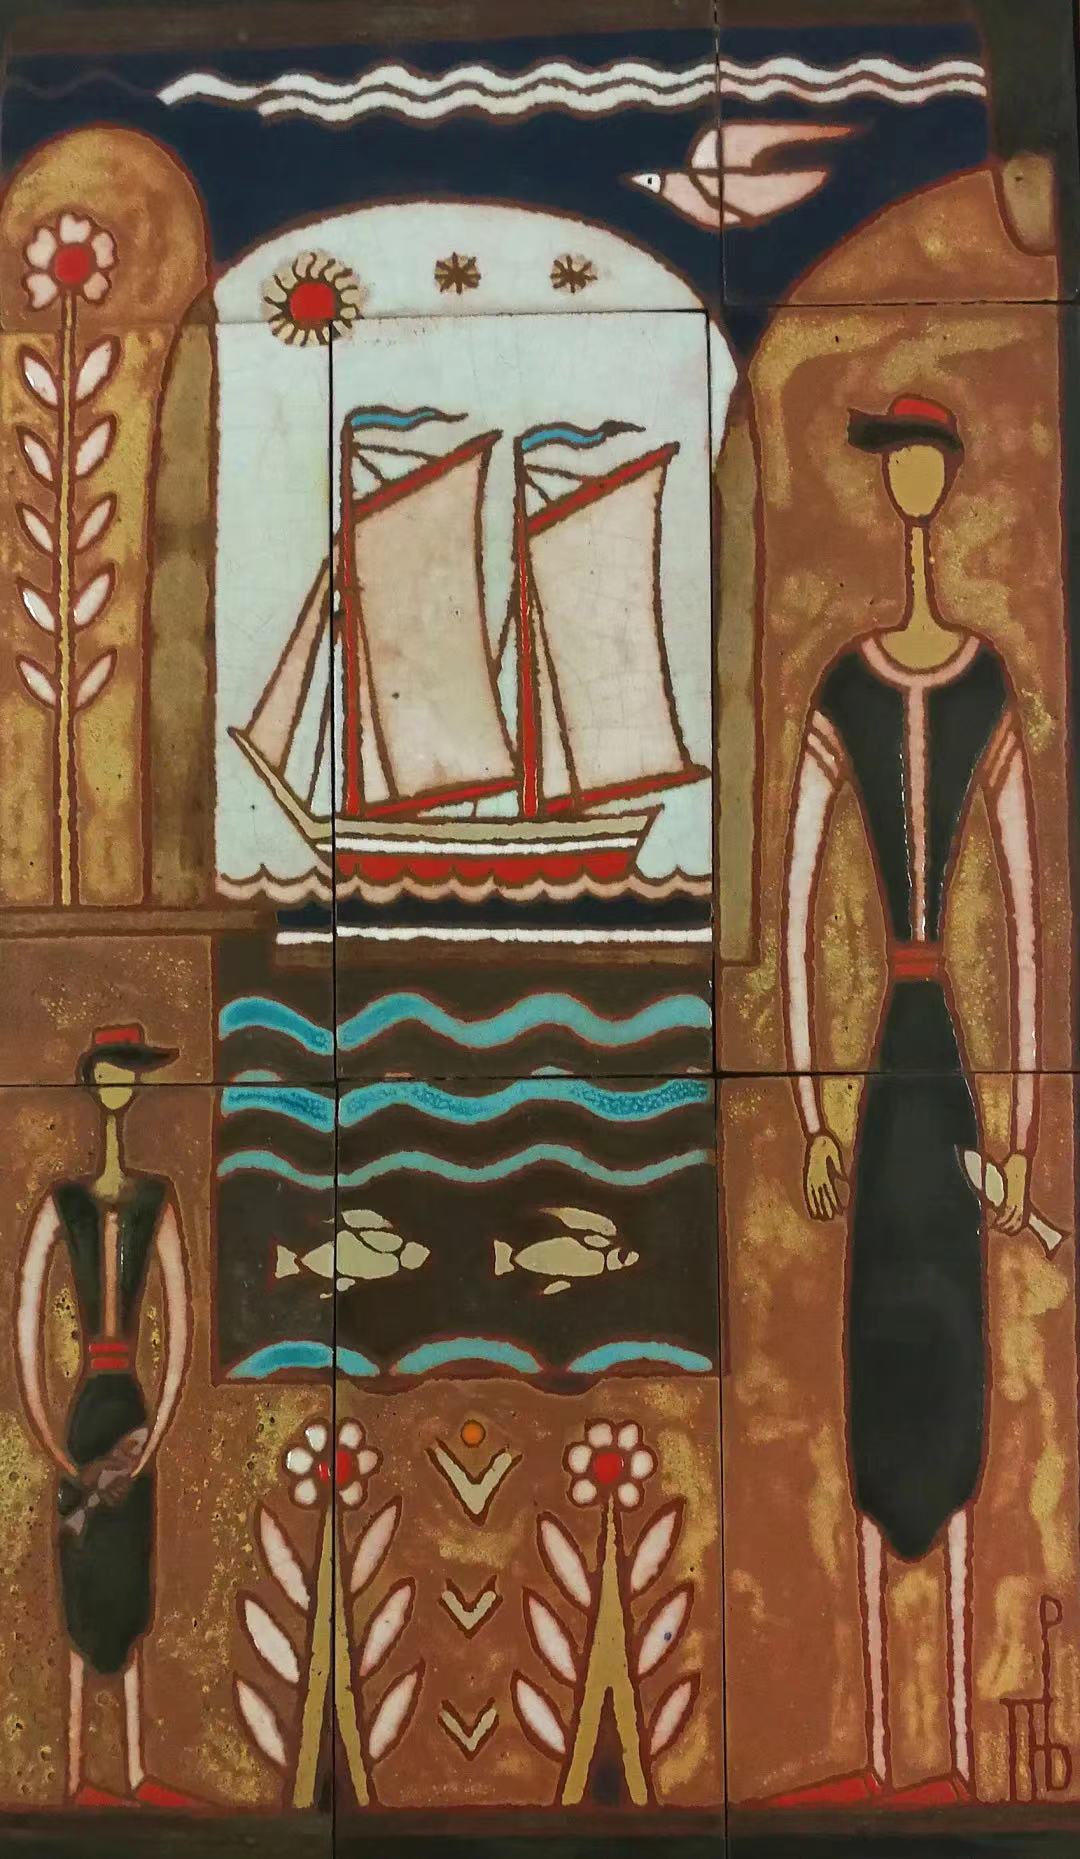 帕诺斯·瓦尔萨马基斯 (1900-1986)，《渔夫与船》，釉面瓷砖，泰洛格利翁艺术基金会藏，图片来源：上海博物馆